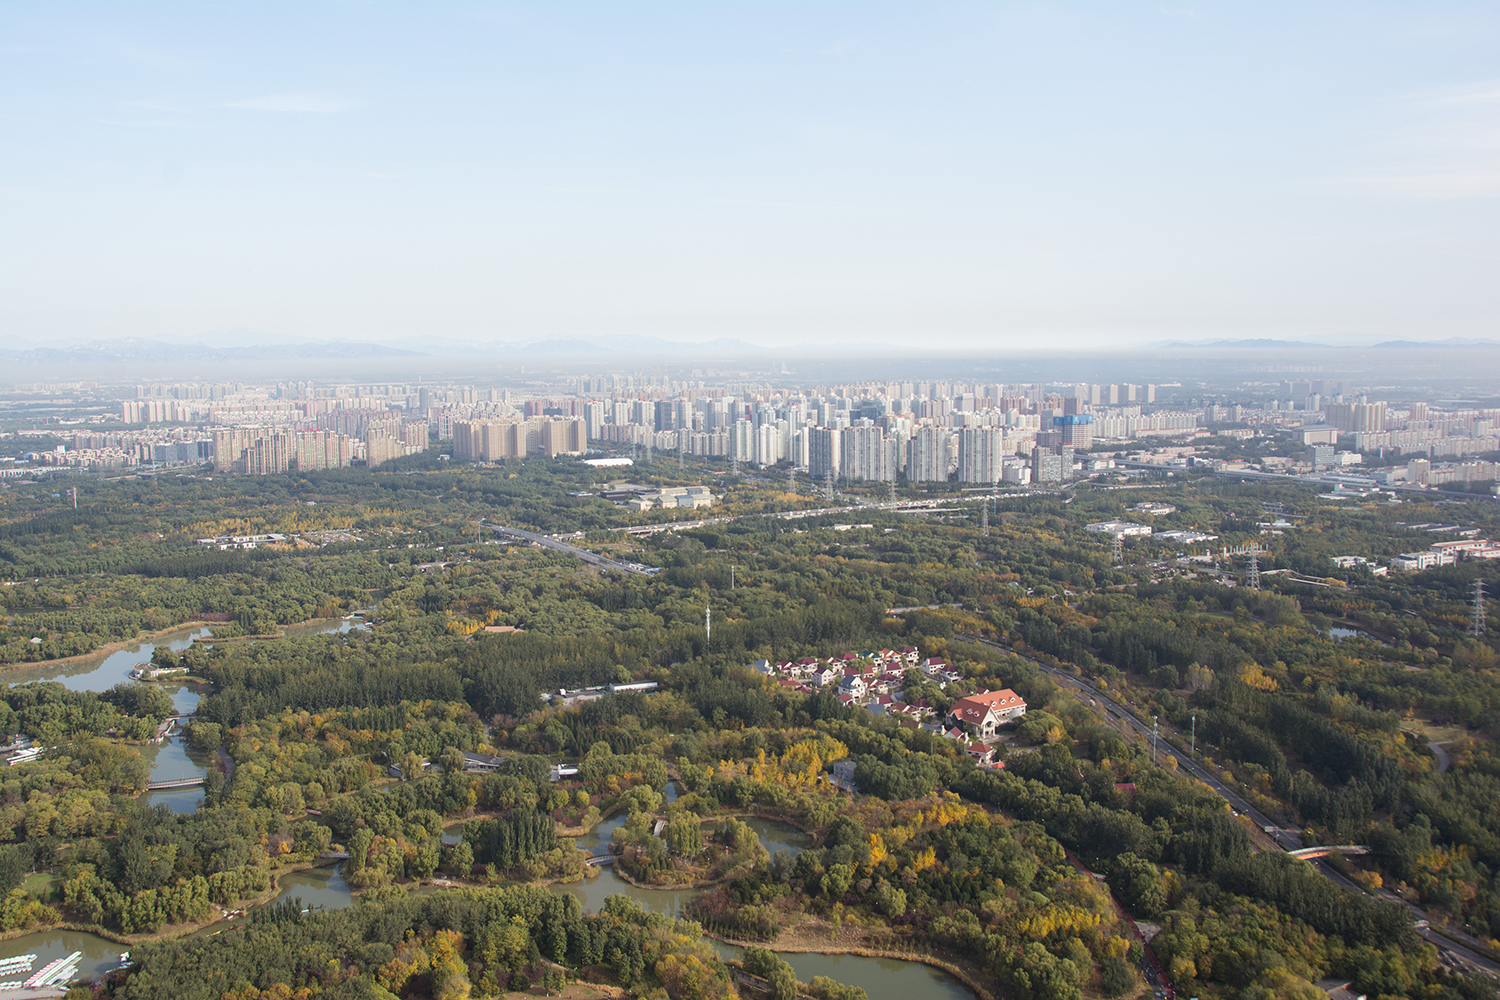 Beijing (Peking). Blick vom Olympiaturm in Richtung wachsender Vororte. Foto: Hanspeter Liniger, CDE